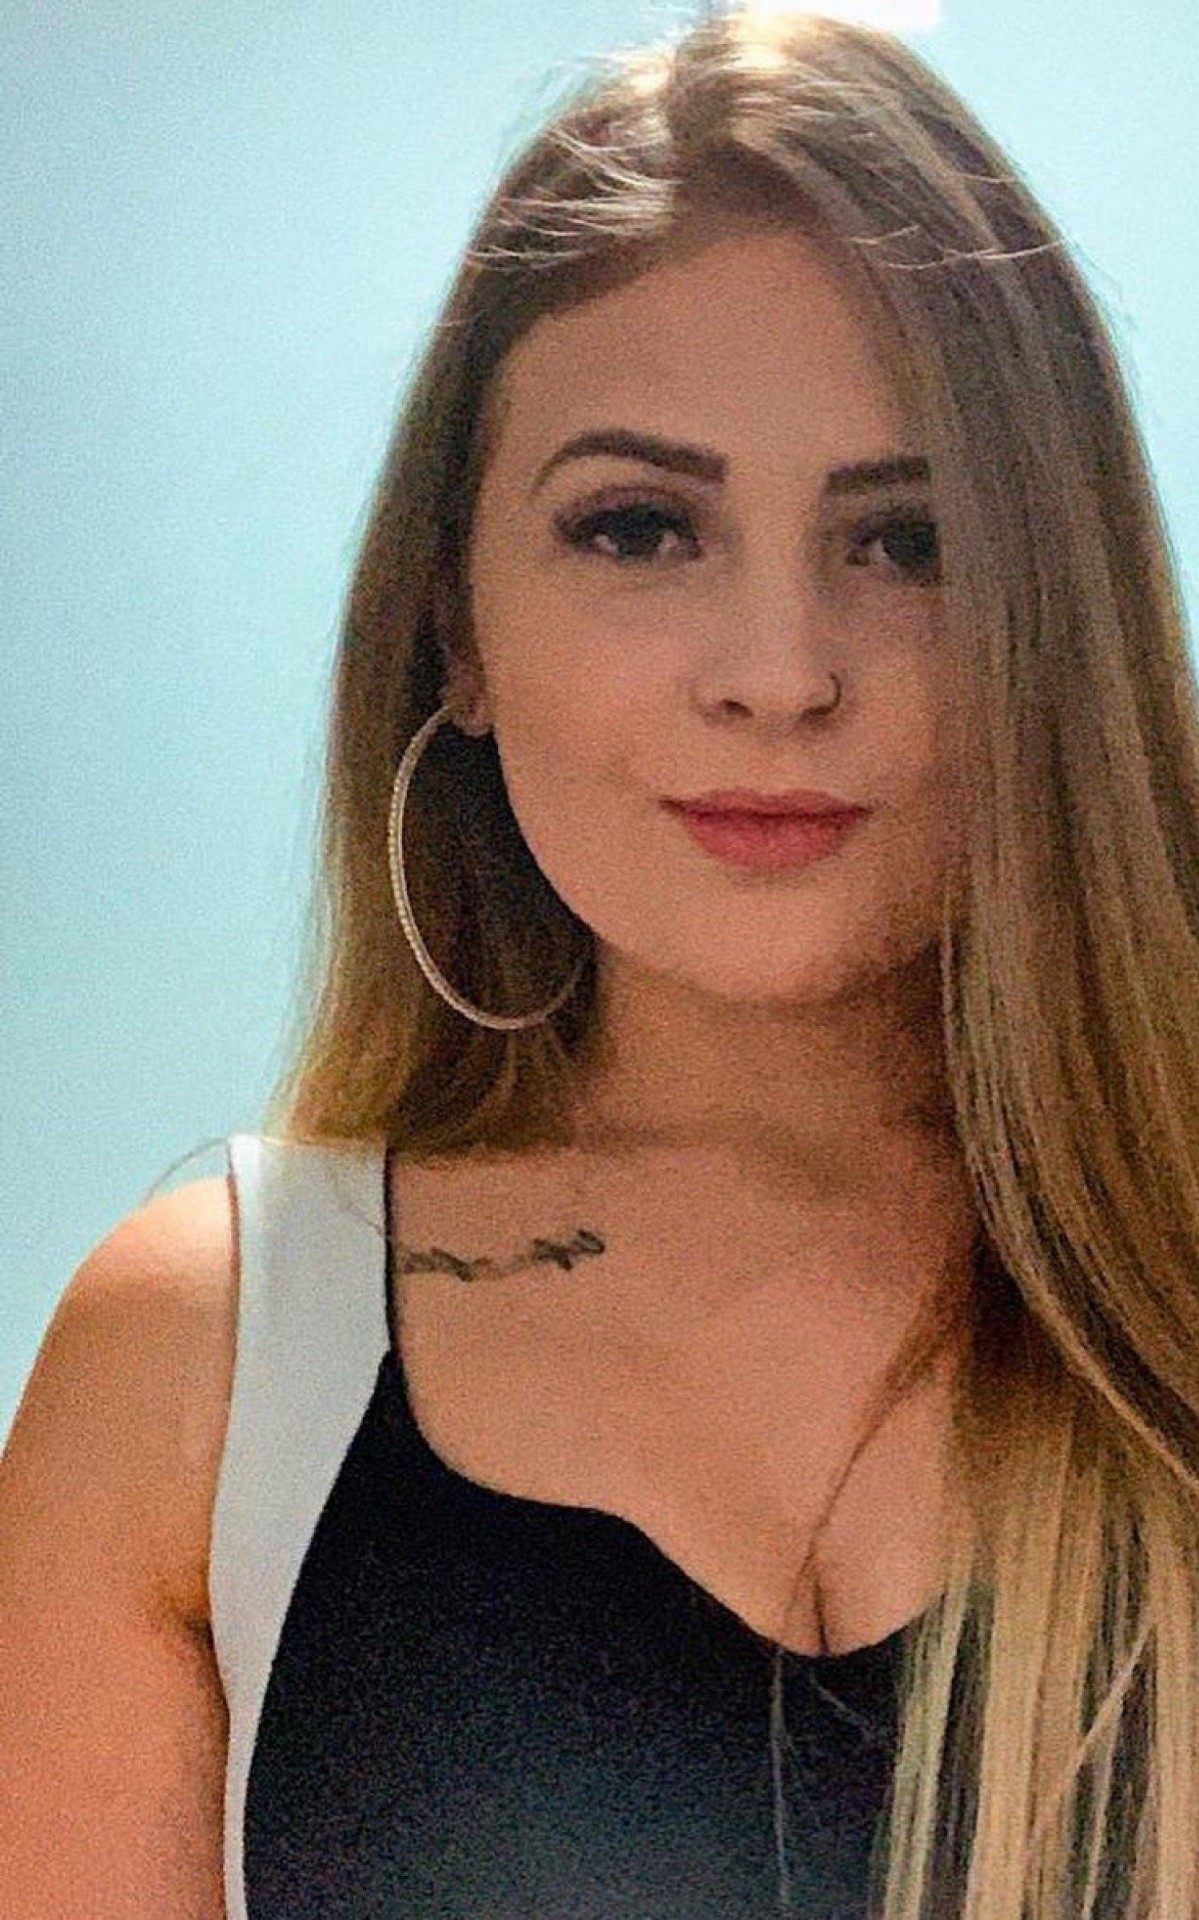 Joana Fabris Deon, 19 anos, foi morta com um tiro. Polícia do RS investiga namorado da vítima e suspeita de feminicídio - Reprodução Instagram